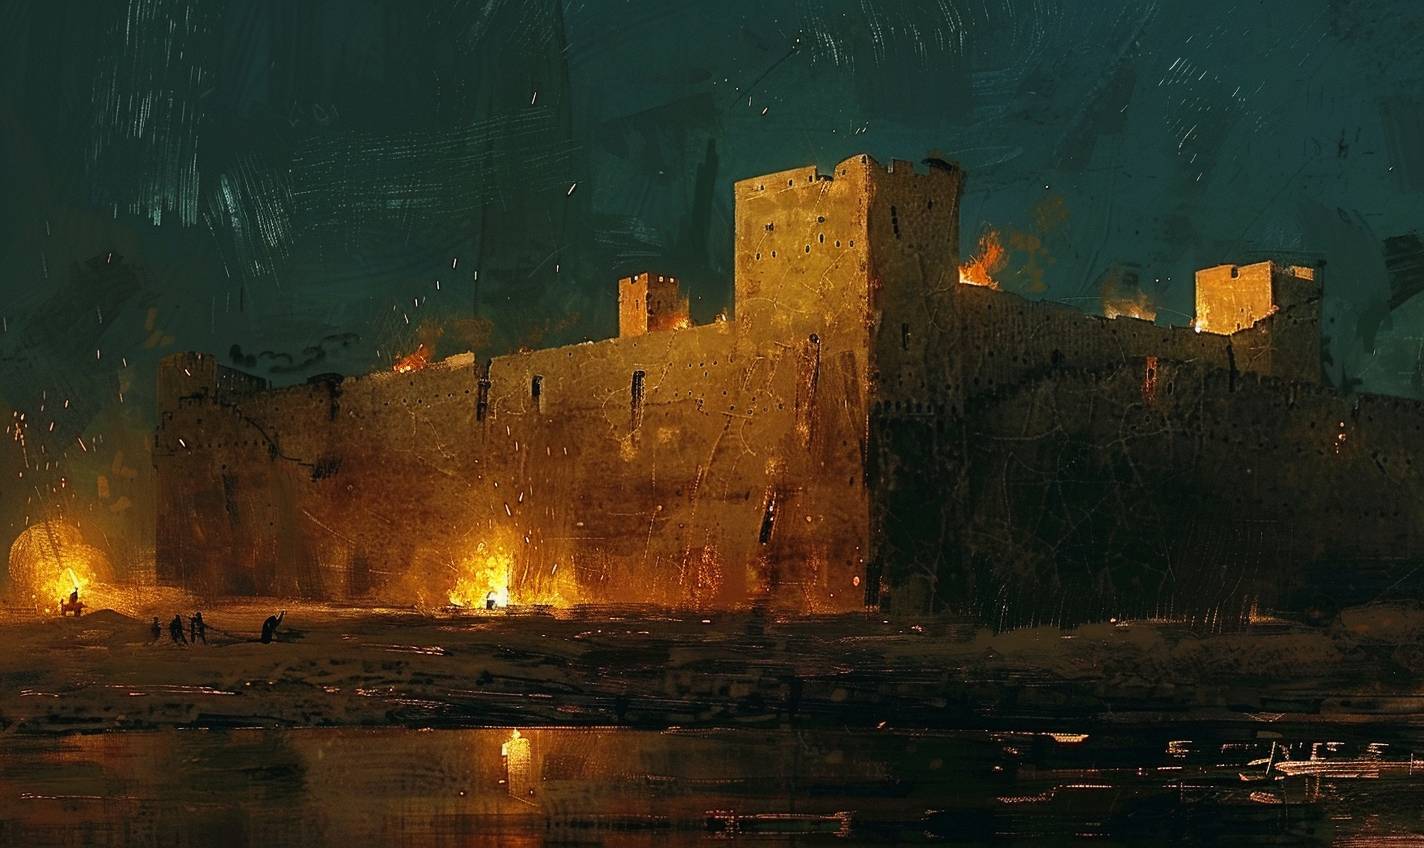 アンドリュー・ワイエスのスタイルで、明かり立つ古代の要塞